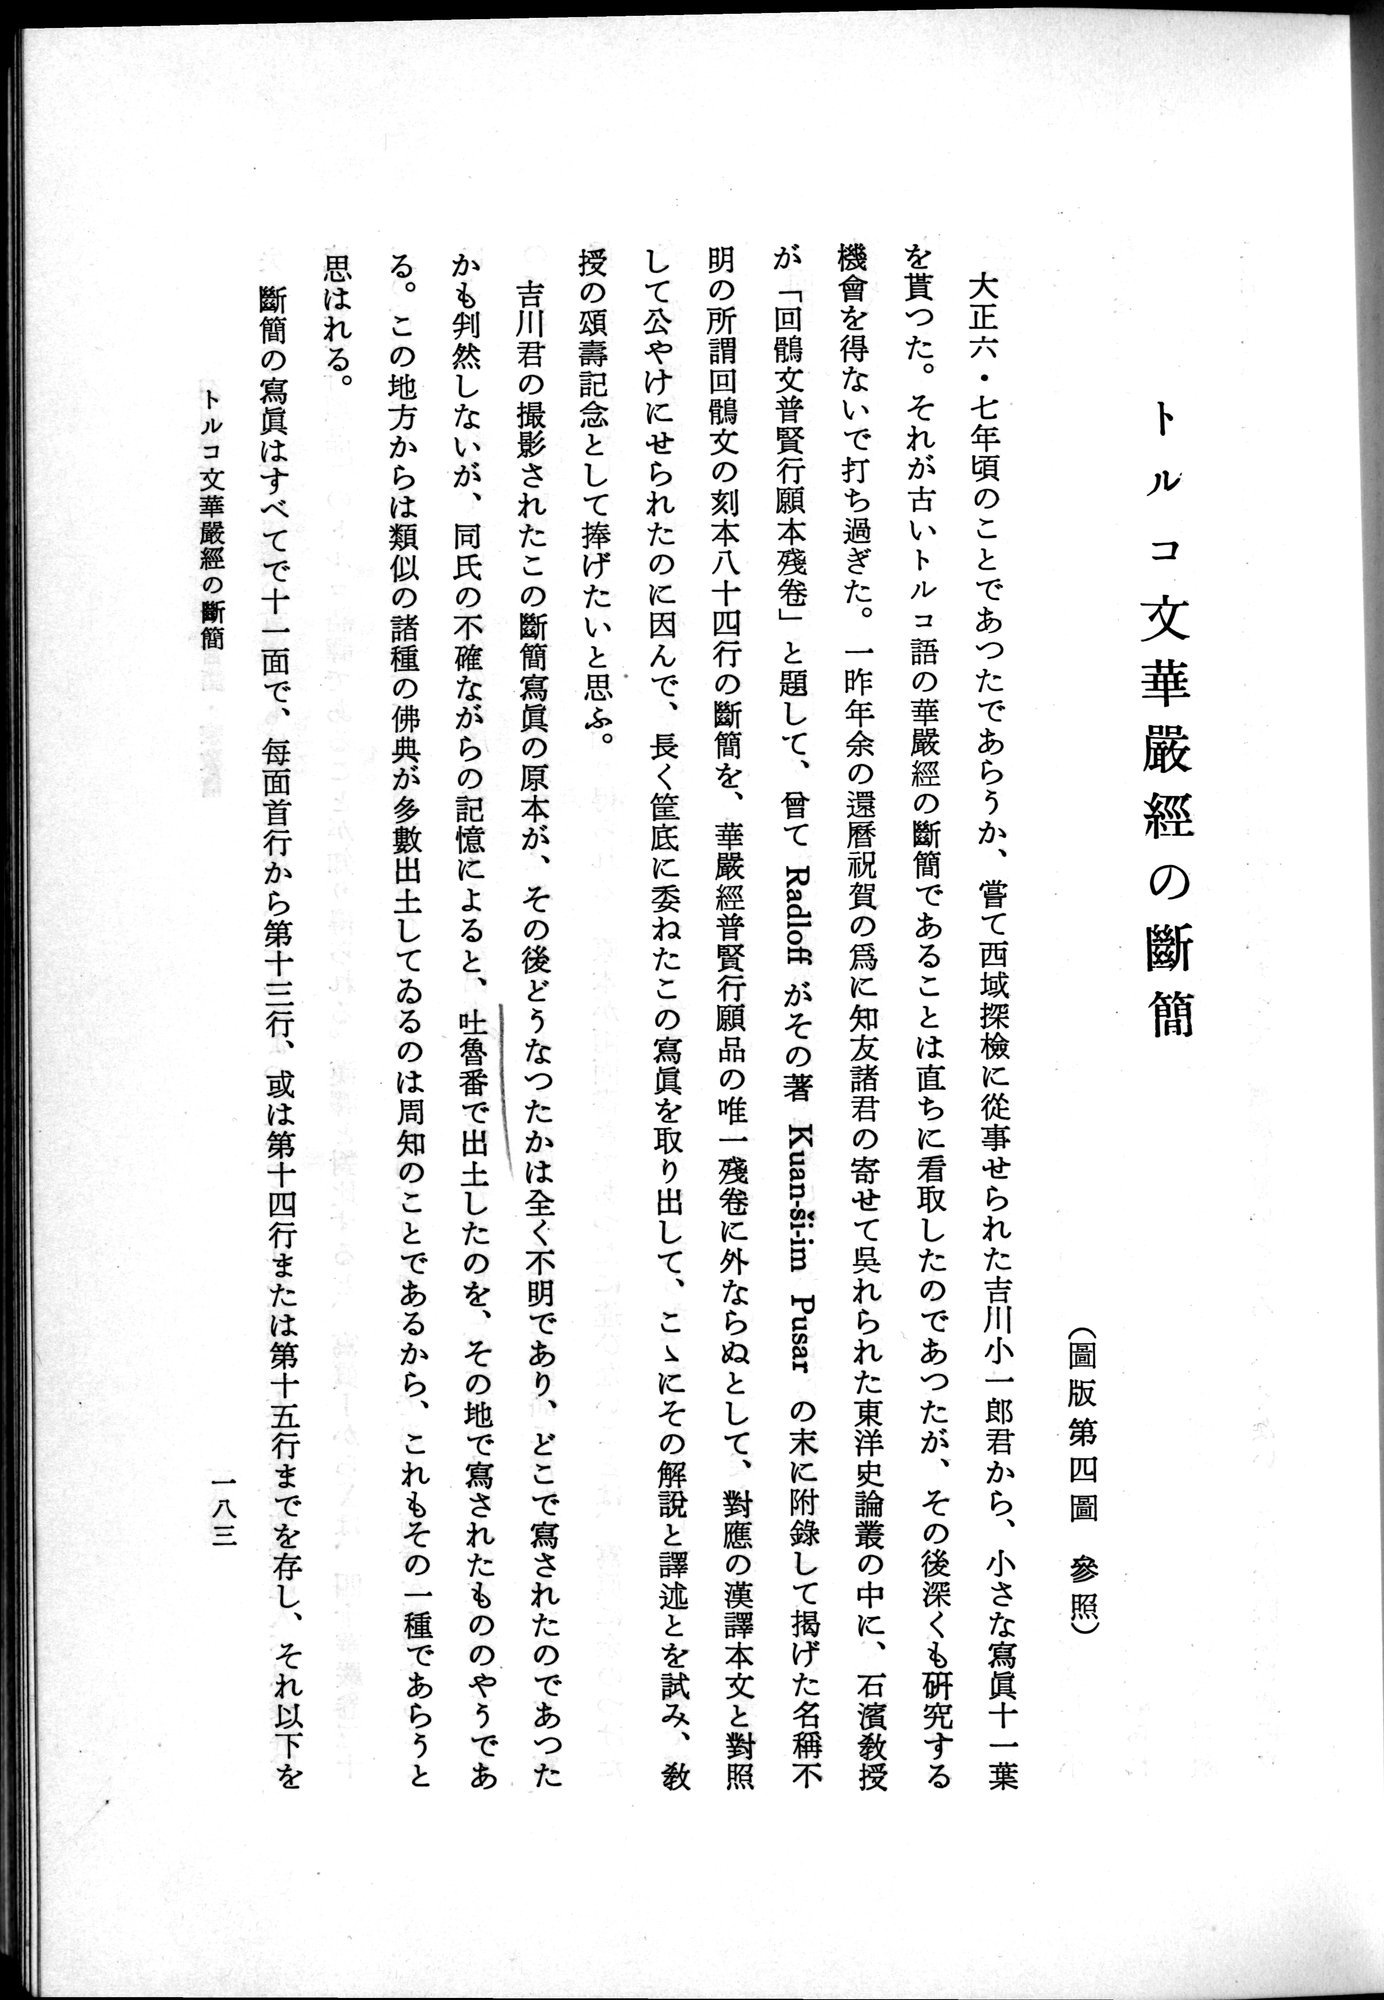 羽田博士史学論文集 : vol.2 / Page 245 (Grayscale High Resolution Image)